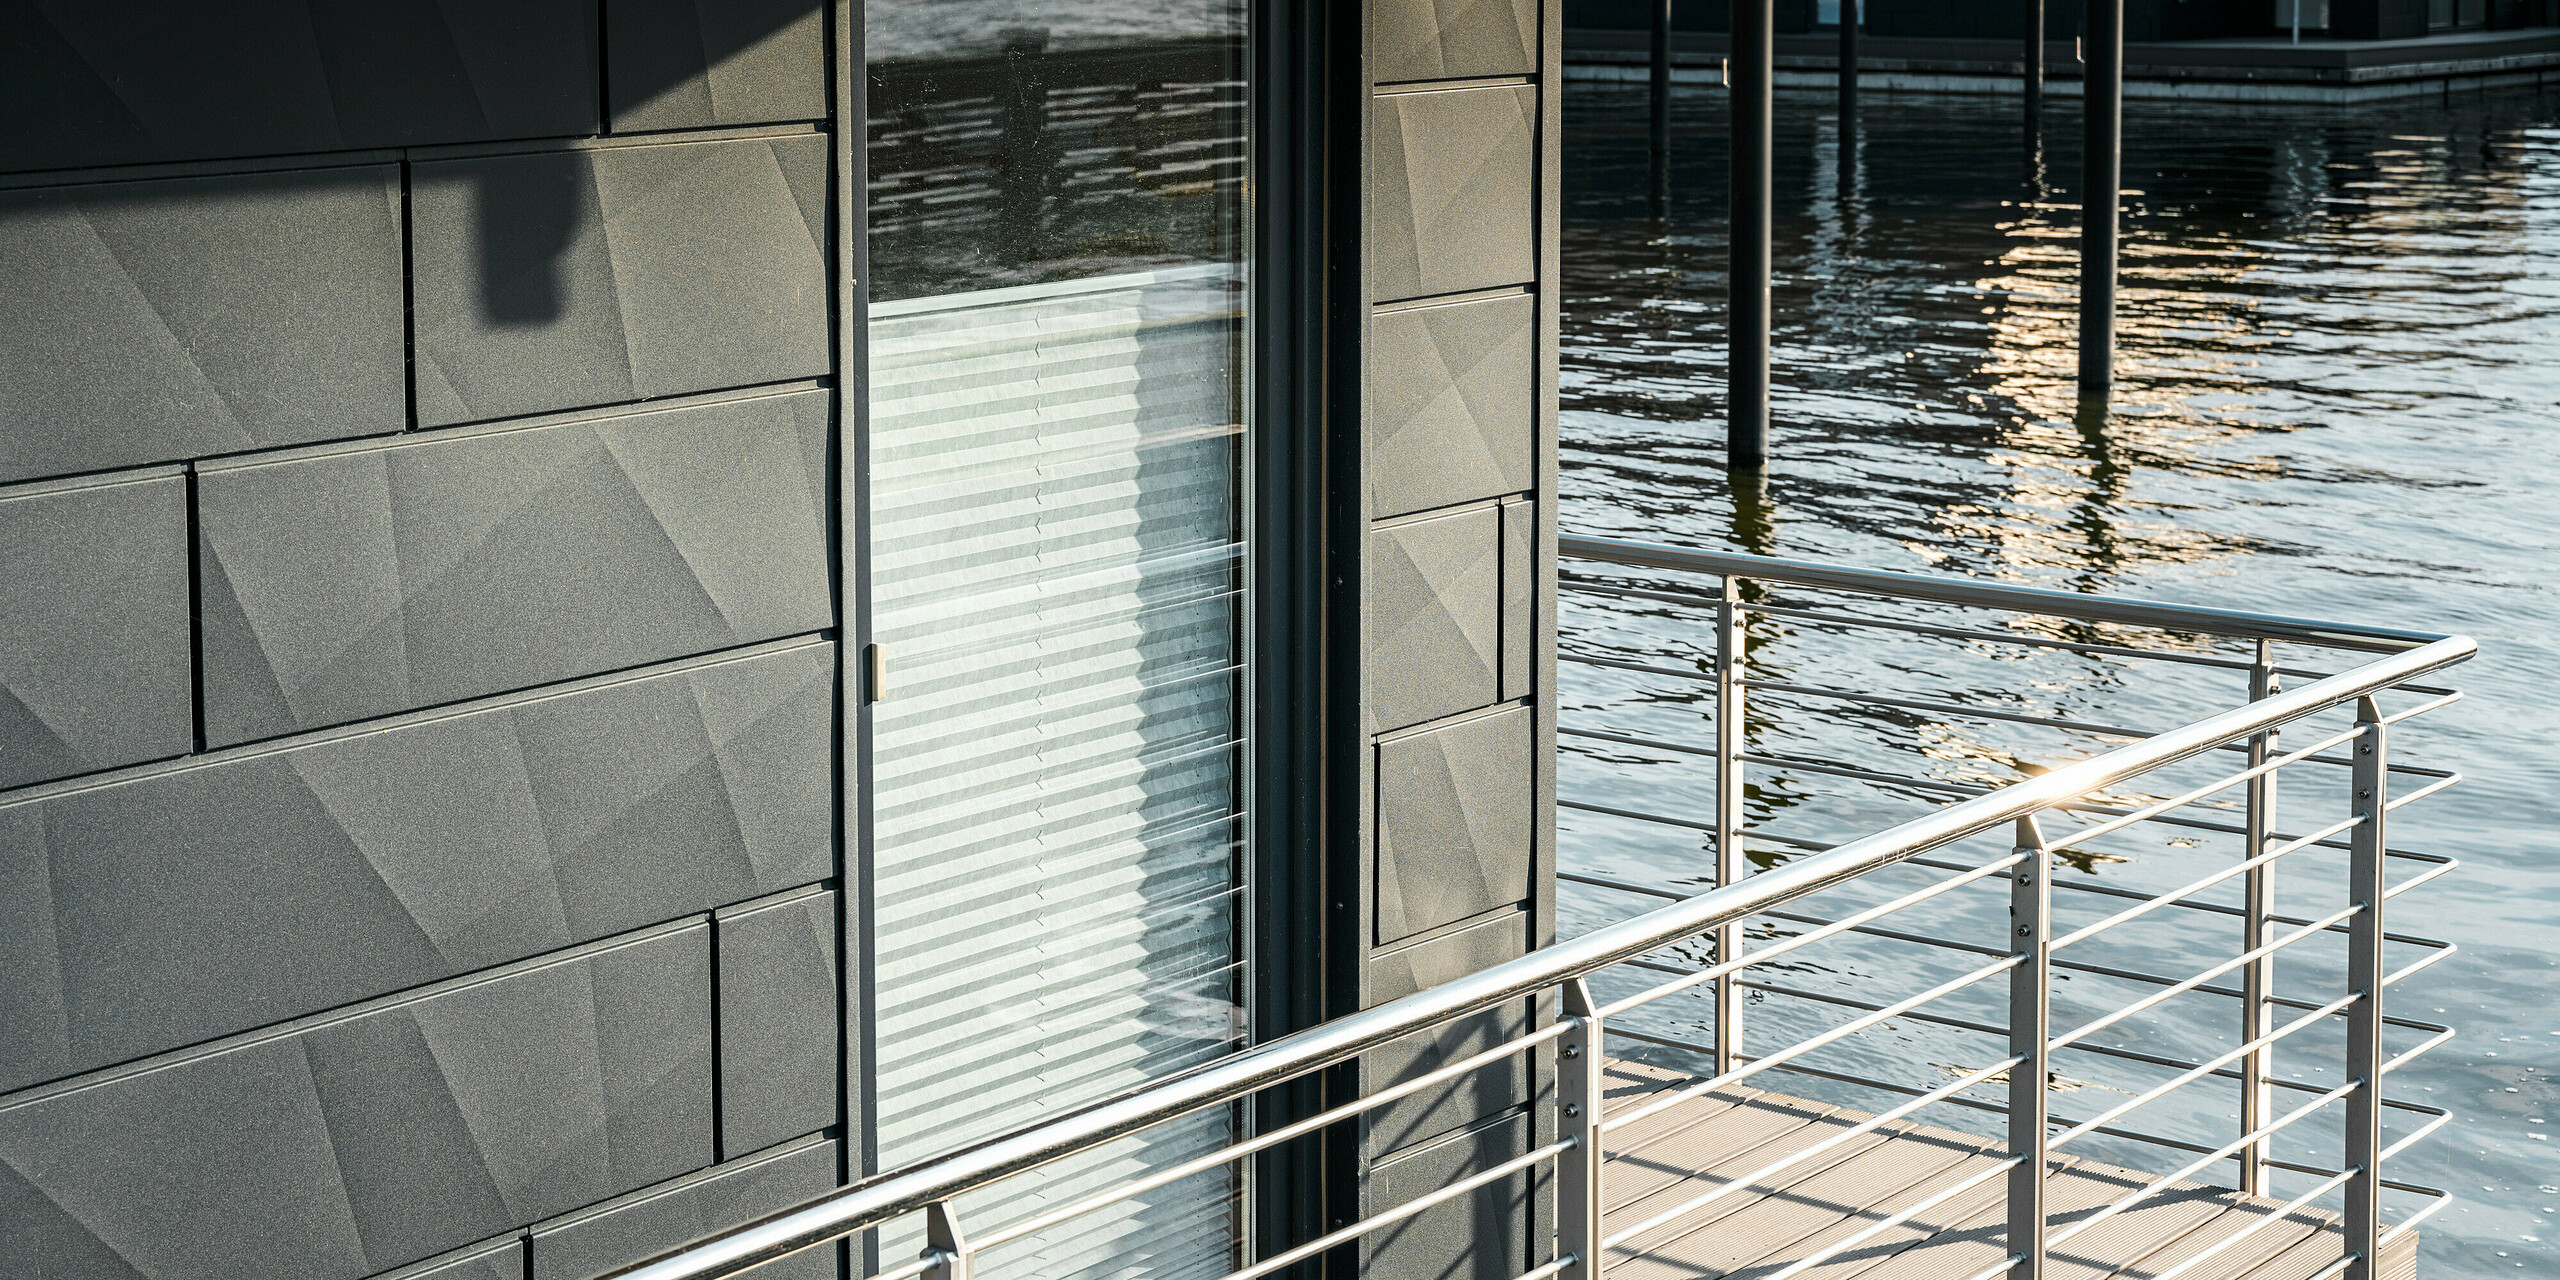 Detailansicht der texturierten Oberfläche einer PREFA Siding.X Aluminiumfassade in P.10 Anthrazit an einem Wasserhaus im Pionierhafen Schleswig. Die Fassade fängt das Licht der untergehenden Sonne ein, was das Wasser darunter reflektiert und für eine beruhigende Atmosphäre sorgt. Die makellose Verarbeitung und das moderne Geländer zeigen die hohe Qualität und das ästhetische Bewusstsein, das in die Gestaltung dieser nachhaltigen Wohnräume am Wasser eingeflossen ist.